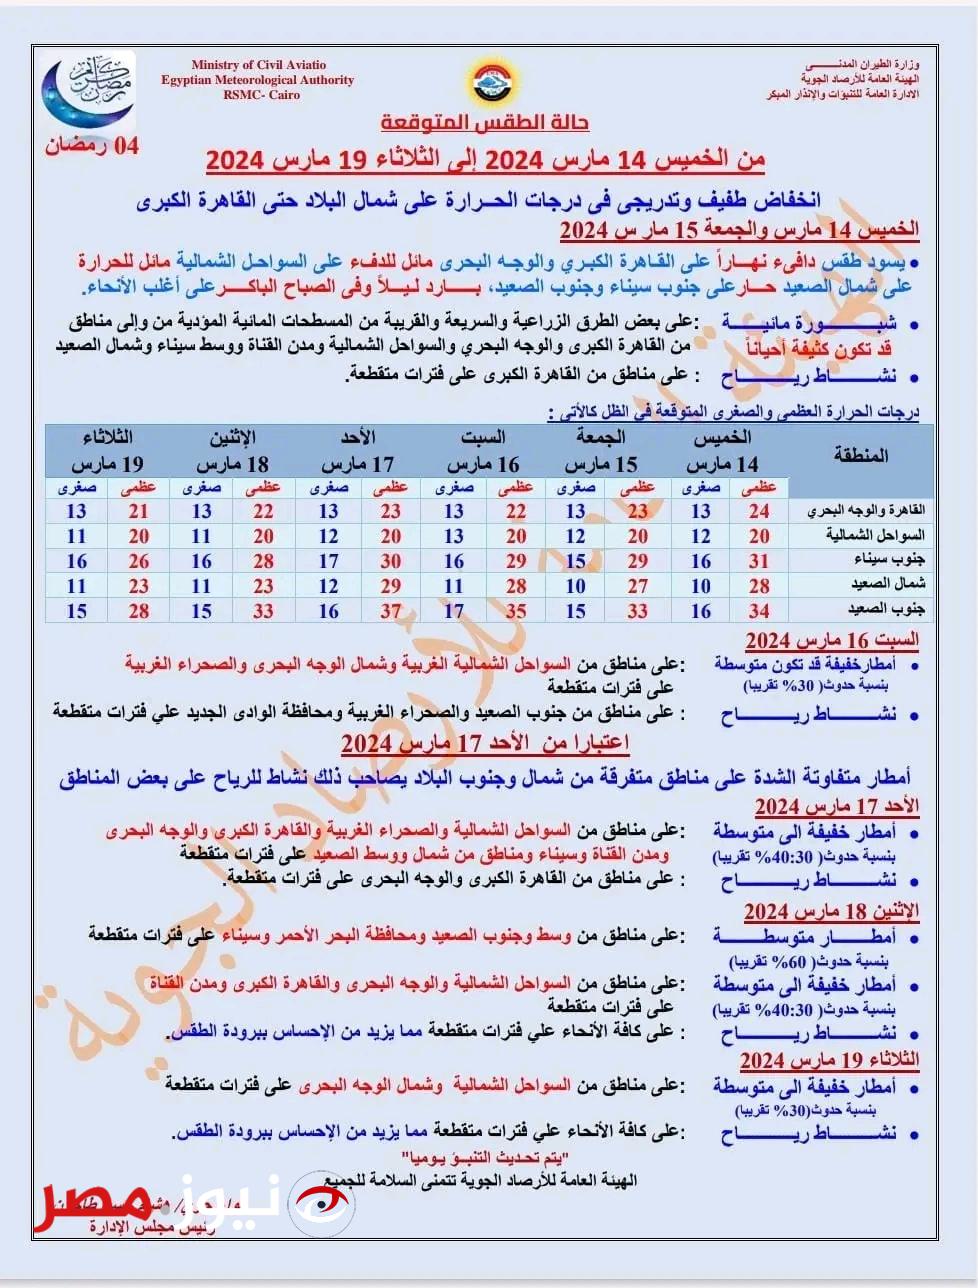 "الشتاء يعود من جديد" توقعات هيئة الأرصاد الجوية المصرية طقس الـ6 أيام القادمة